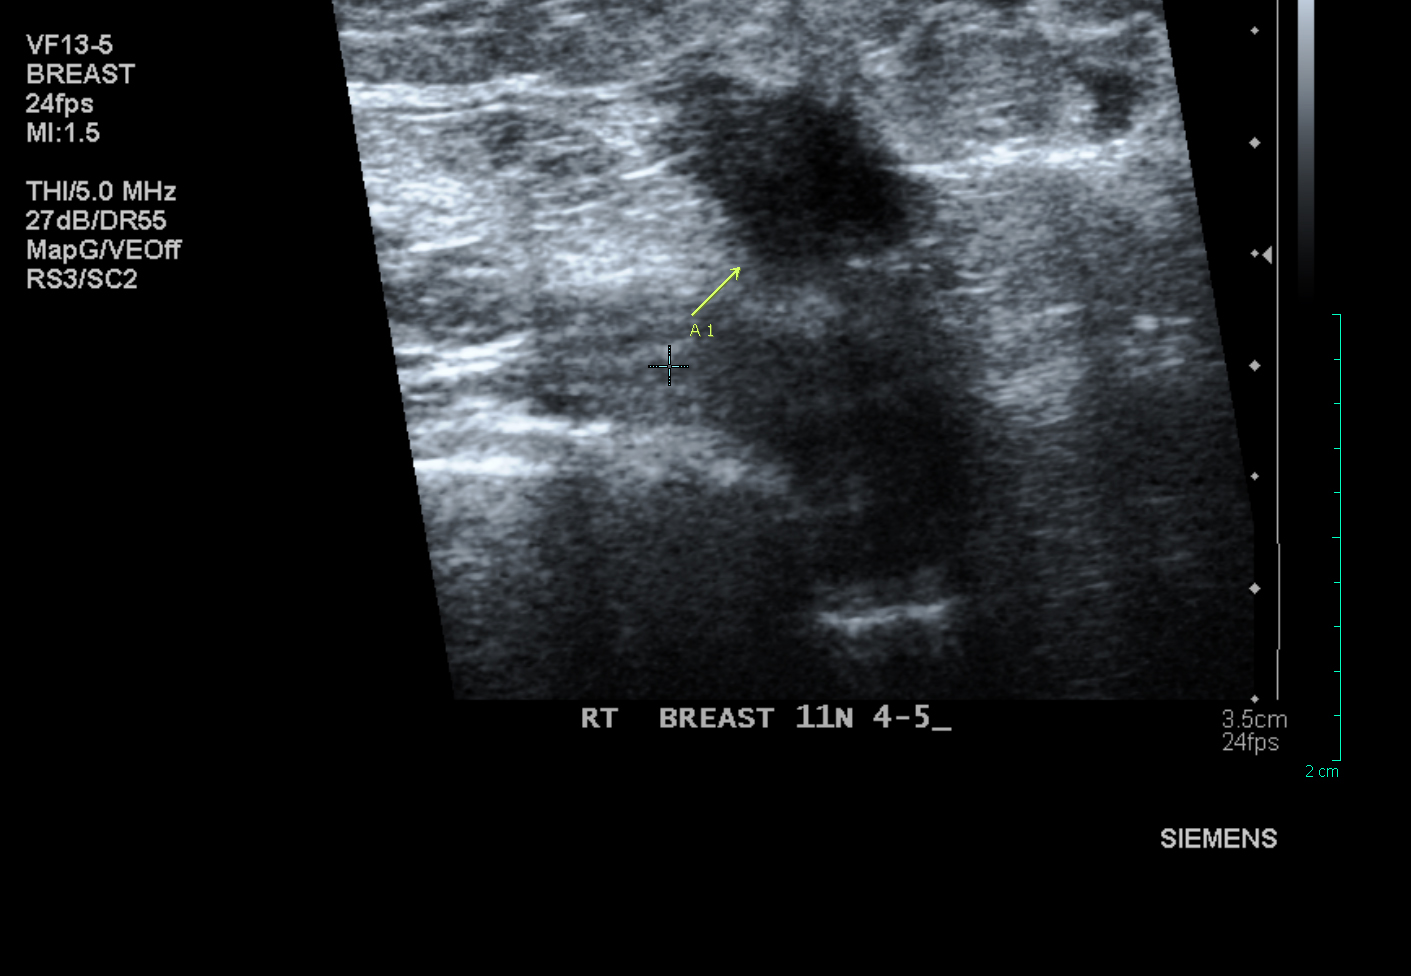 klomp misschien niet gevonden op echografie of mammogram